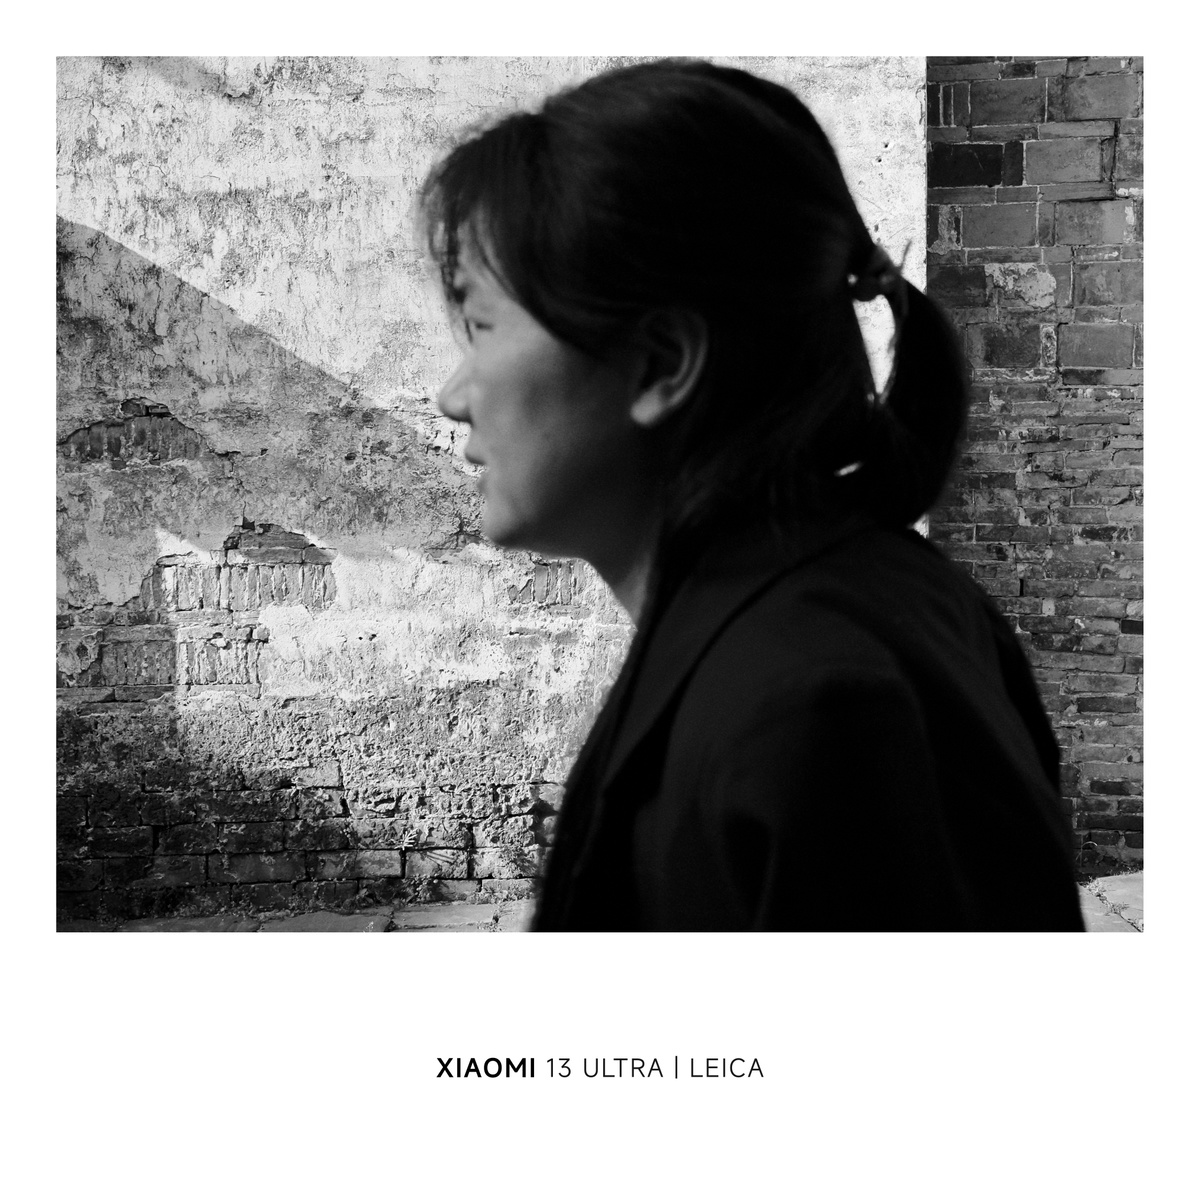 黑白照片 一位年轻女子站在砖墙前